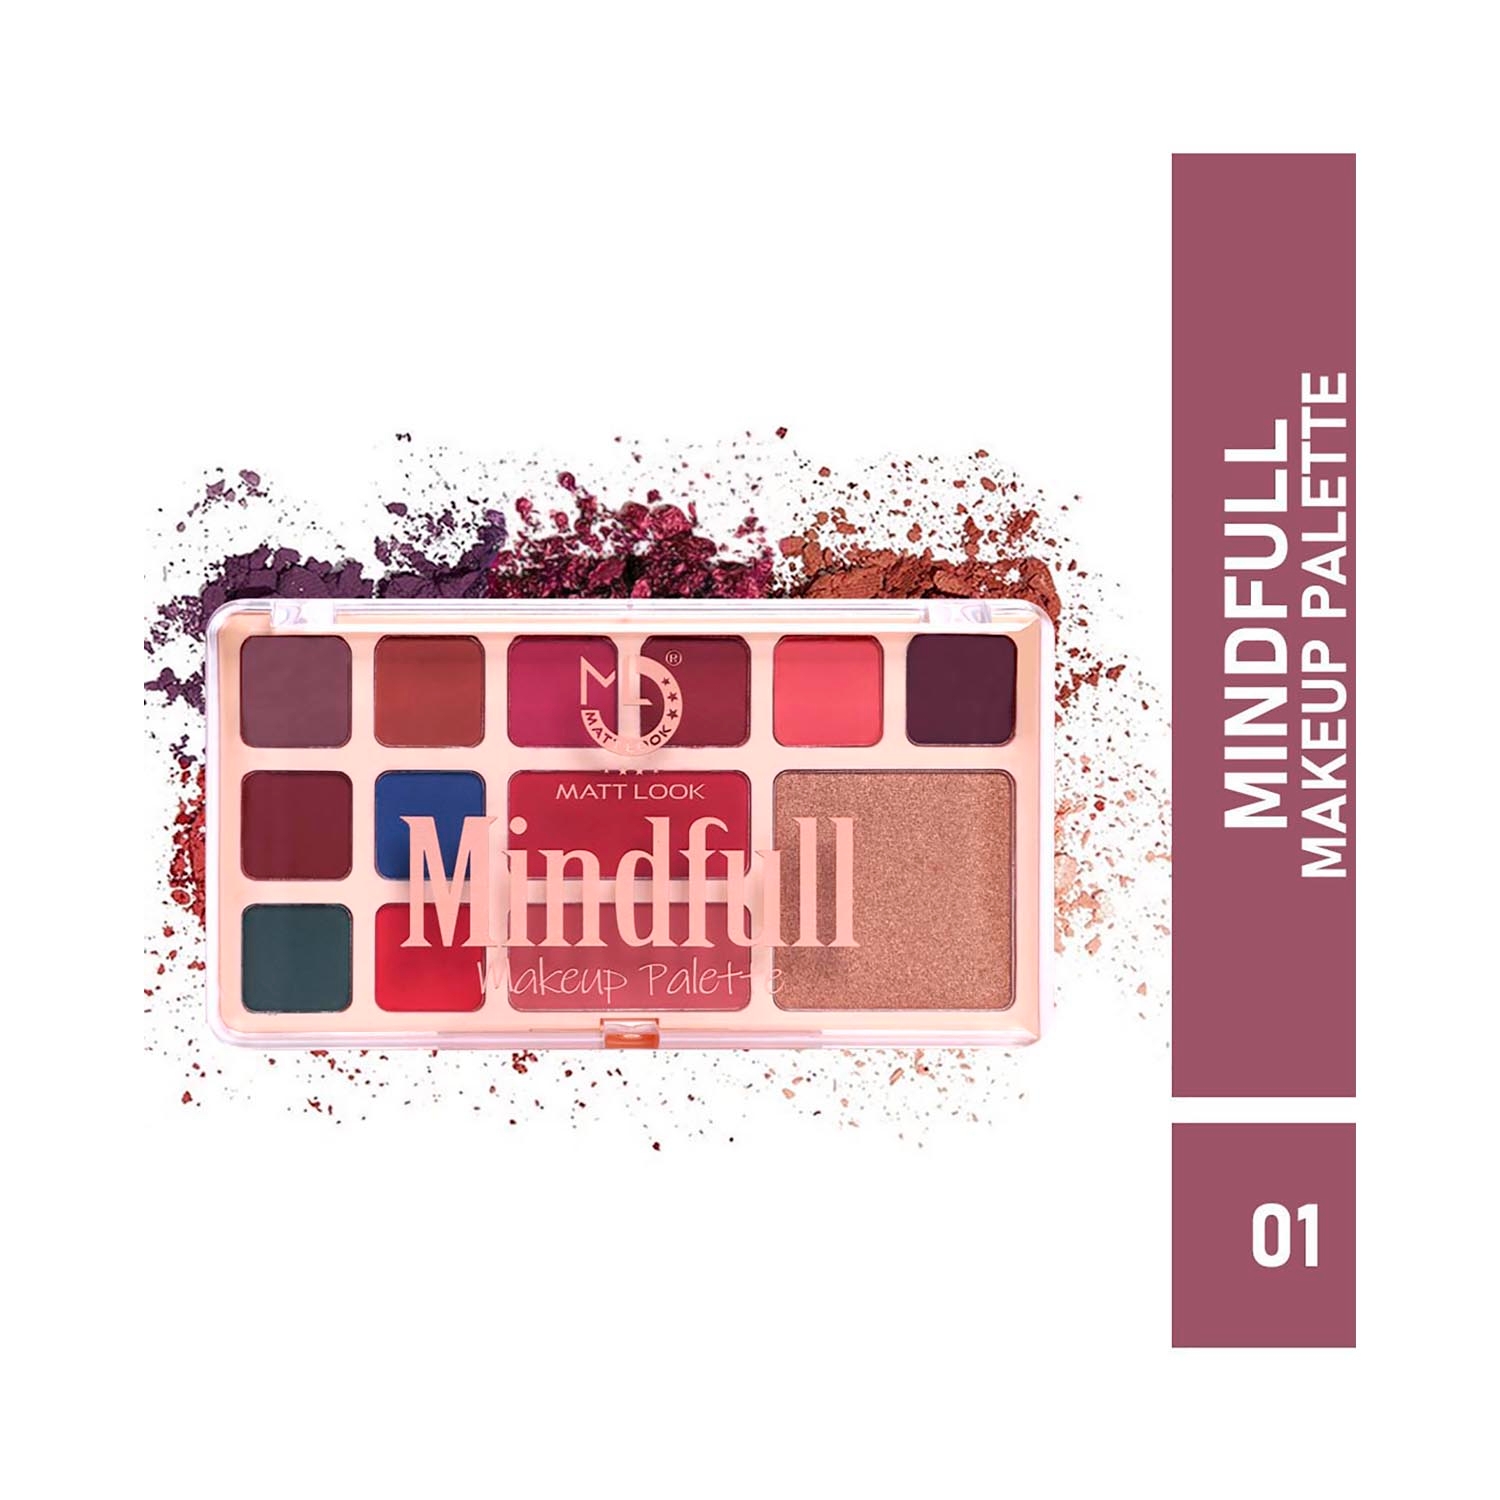 Matt Look | Matt Look Mindfull Makeup Palette - 01 Shade (16.5g)